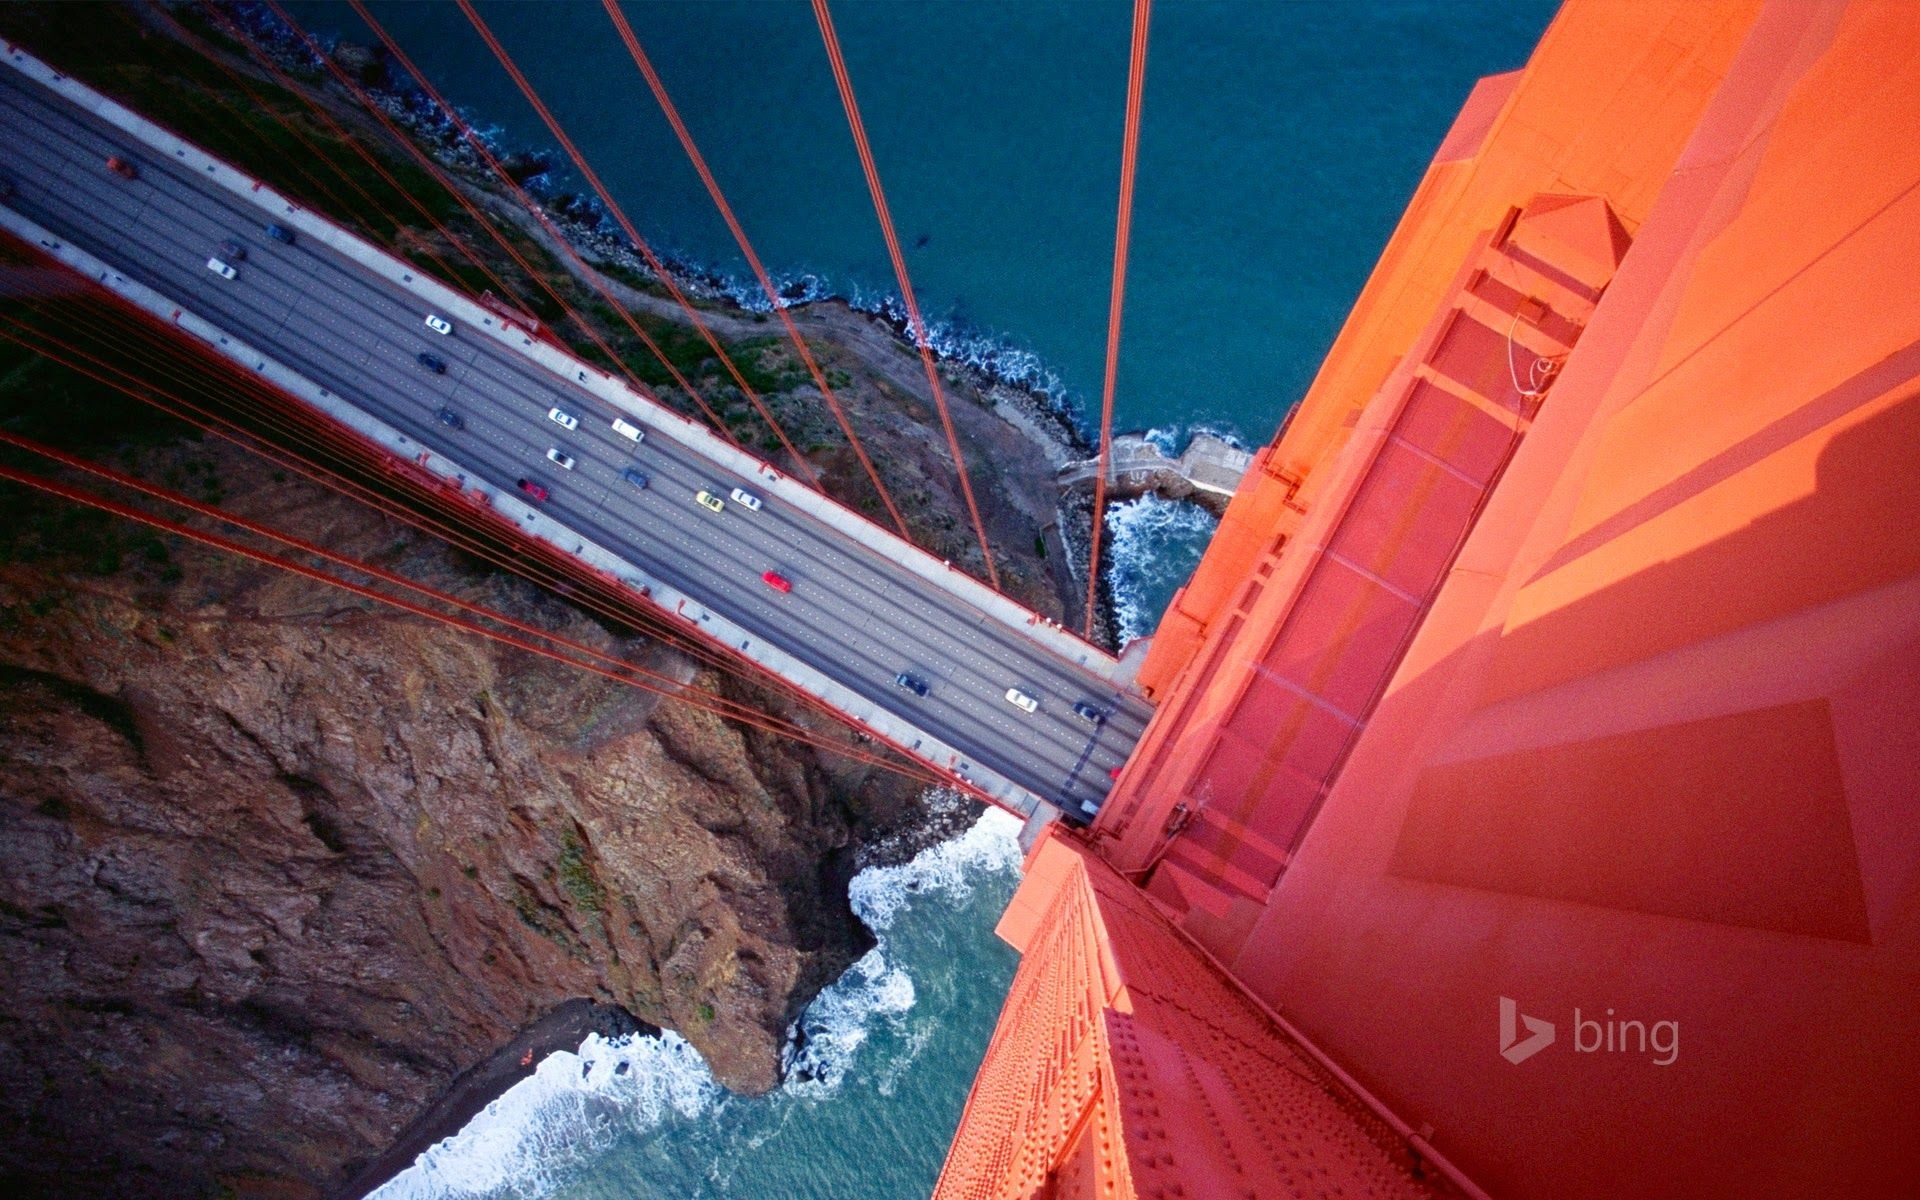 1920x1200, 50 New Bing Wallpapers, Bing Wallpapers - Golden Gate Bridge  Looking Down - 1920x1200 Wallpaper 